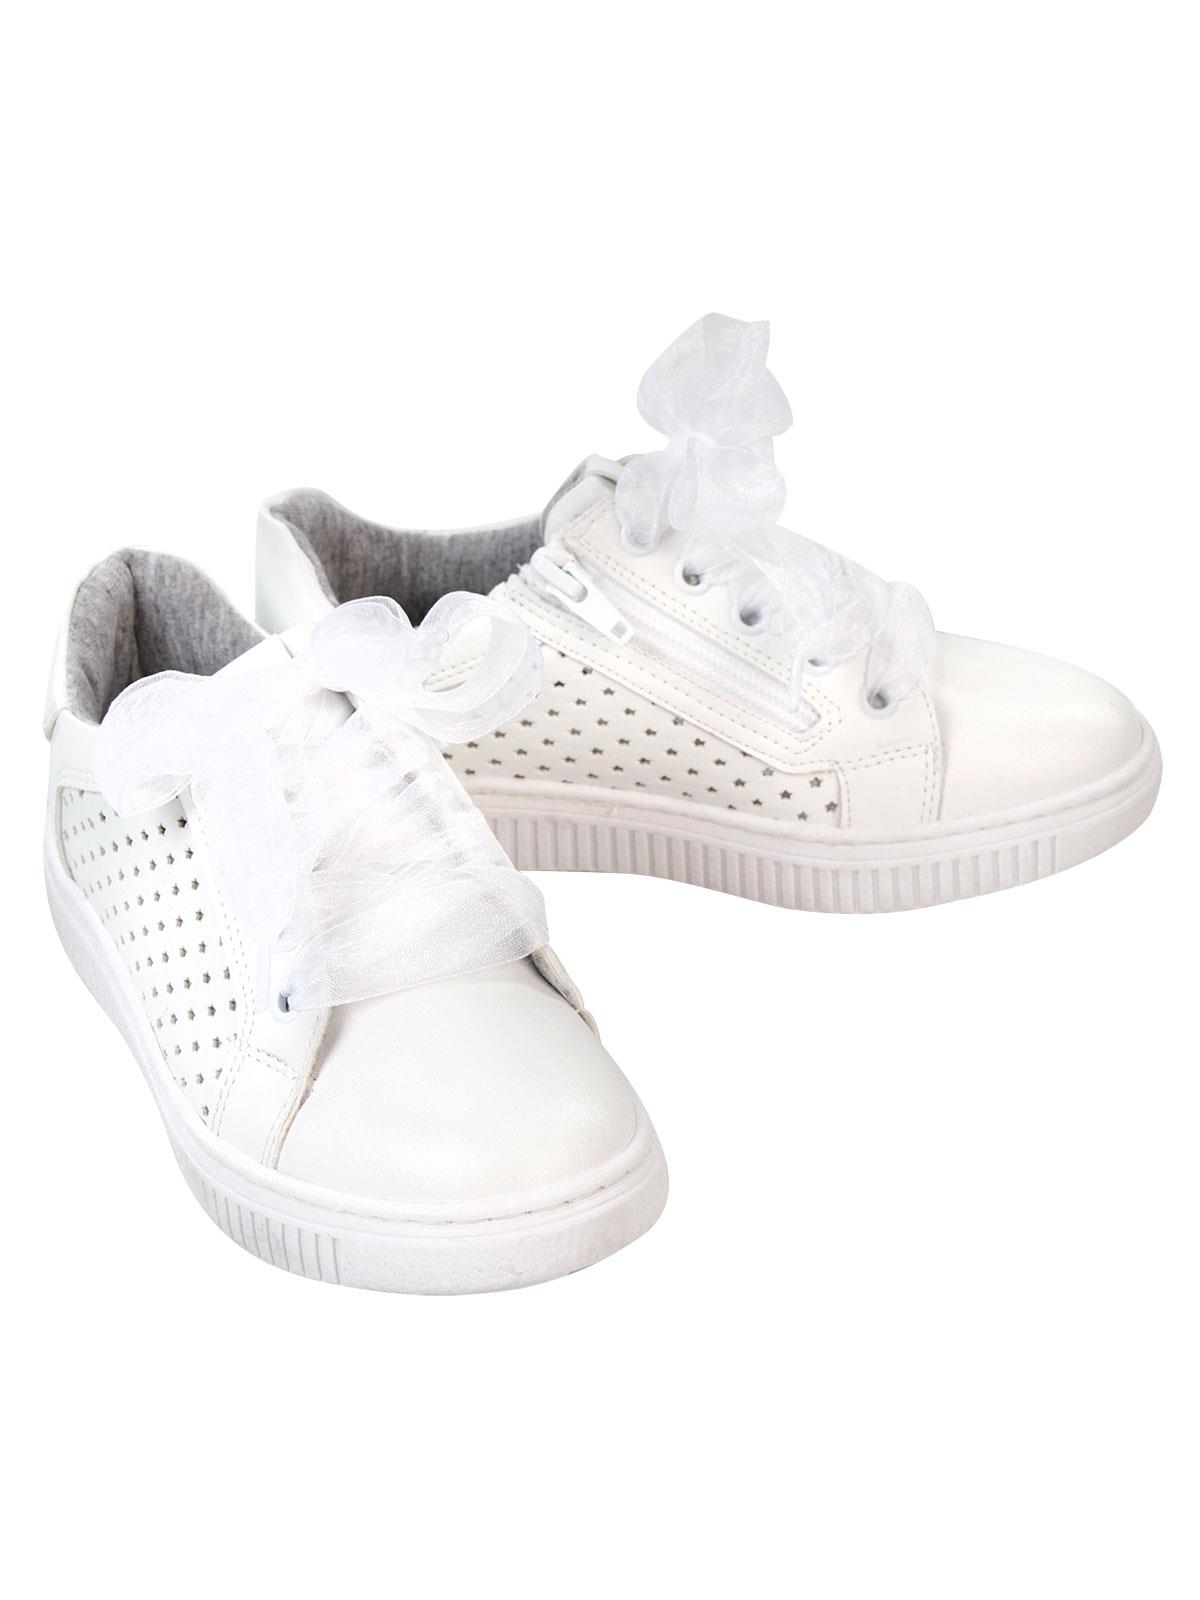 Missiva Kız Çocuk Spor Ayakkabı 31-35 Numara Beyaz